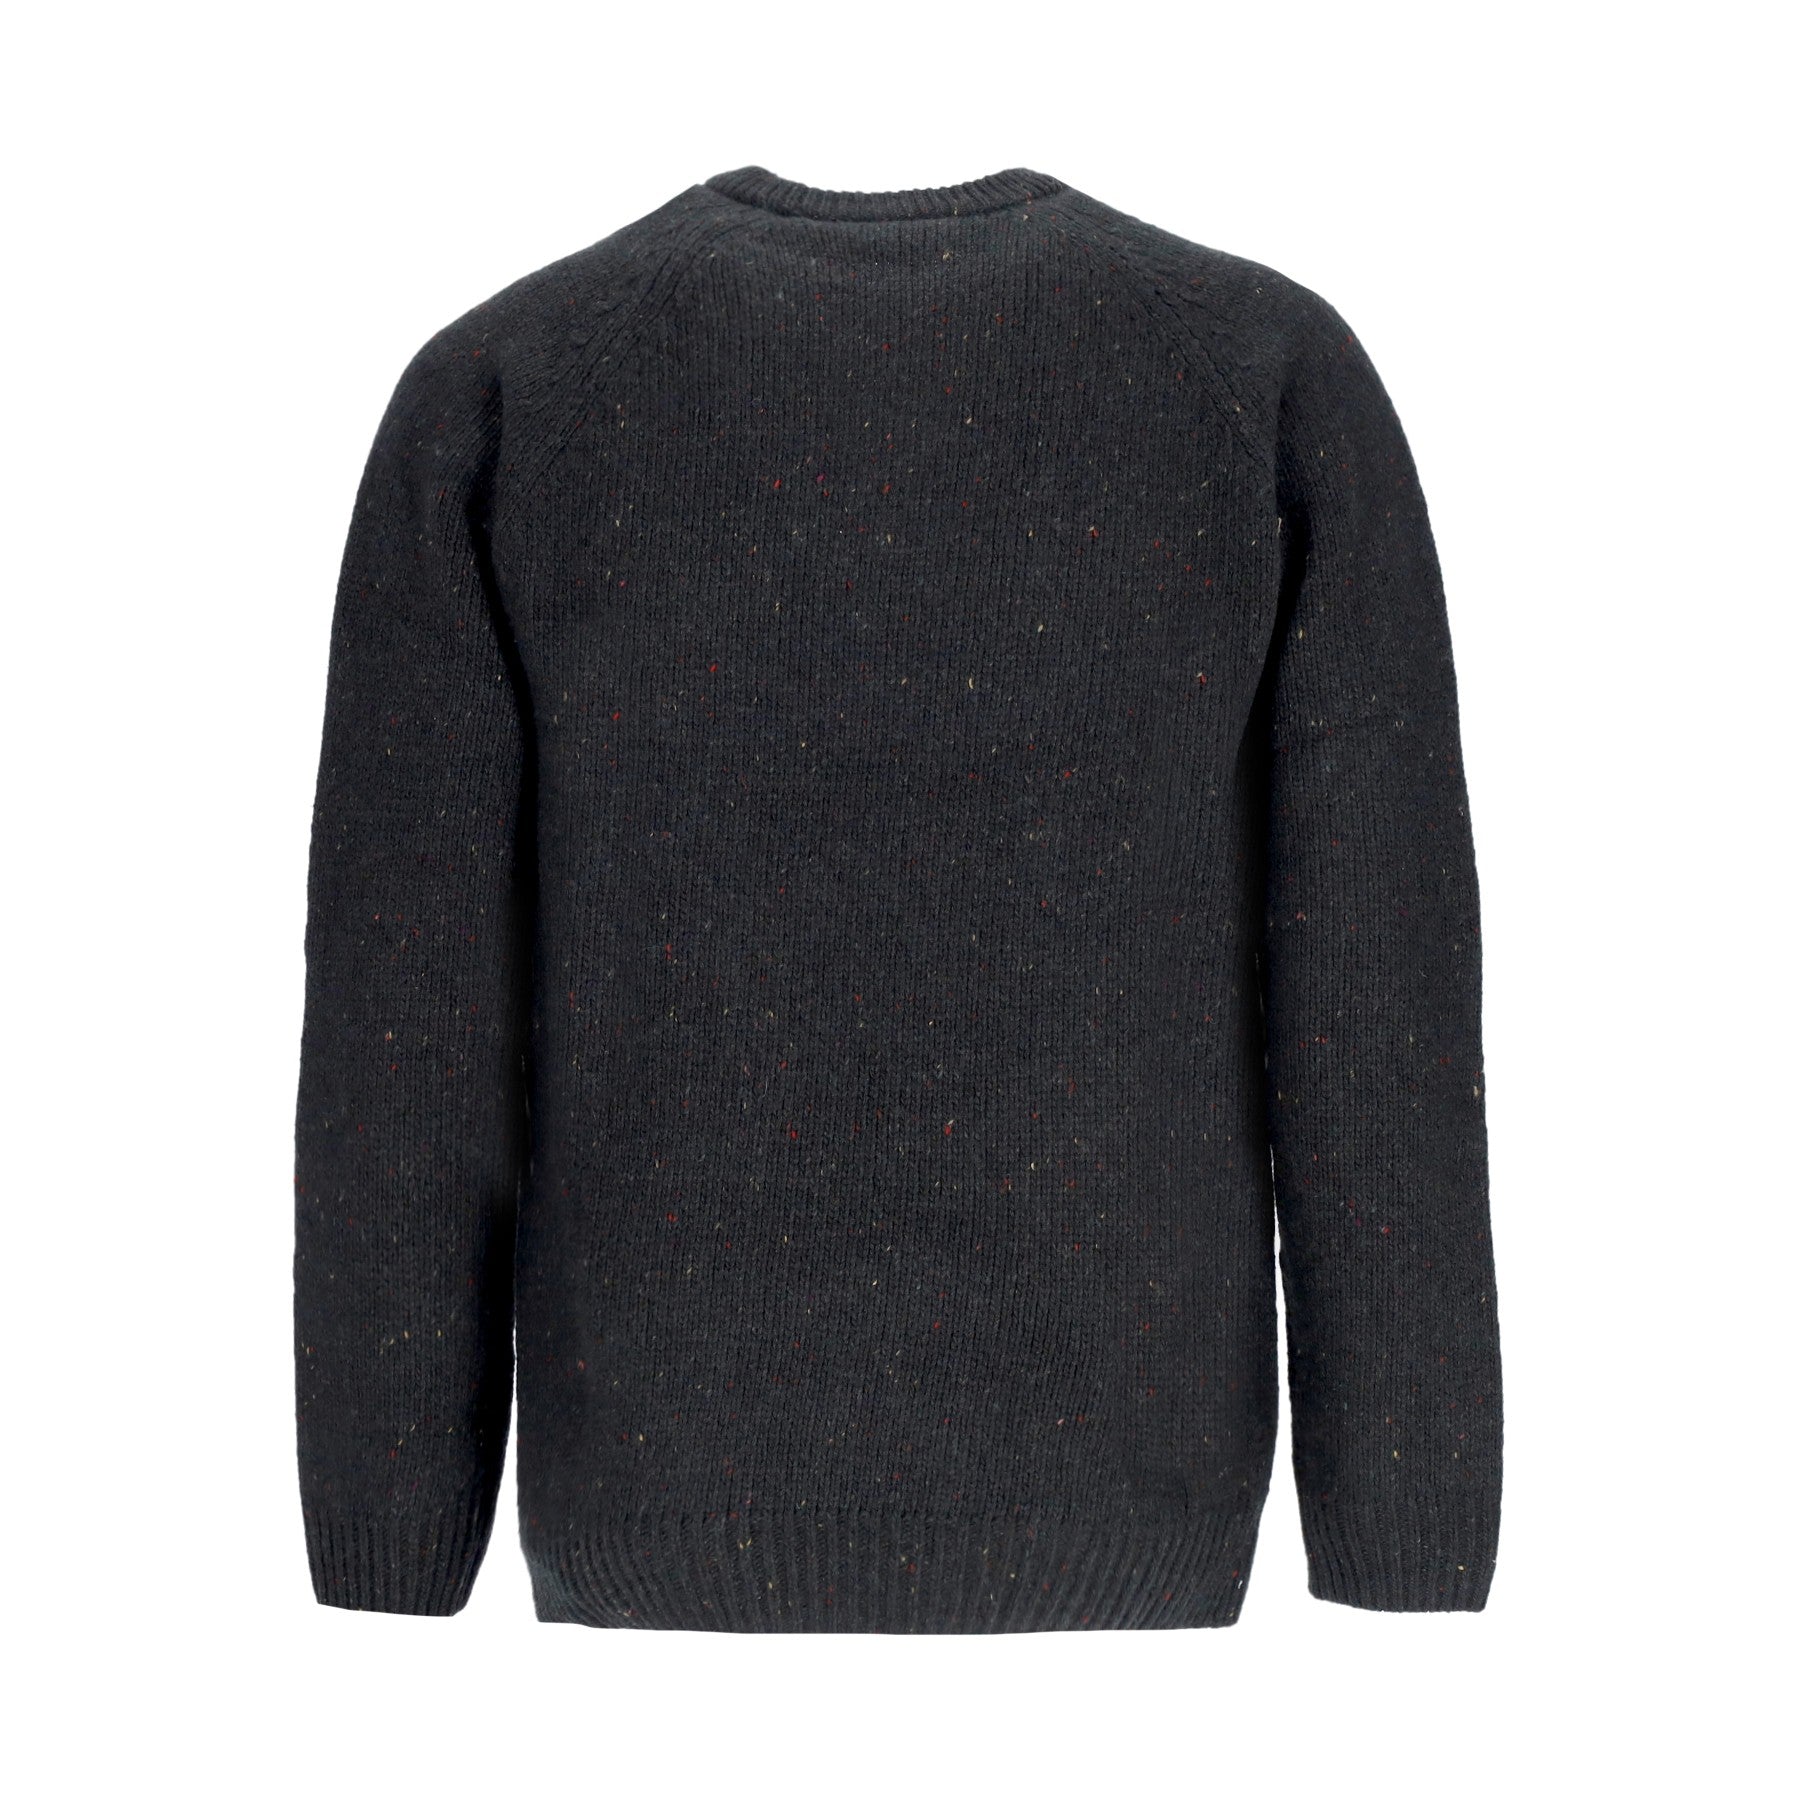 Maglione Uomo Anglistic Sweater Speckled Dark Cedar I010977